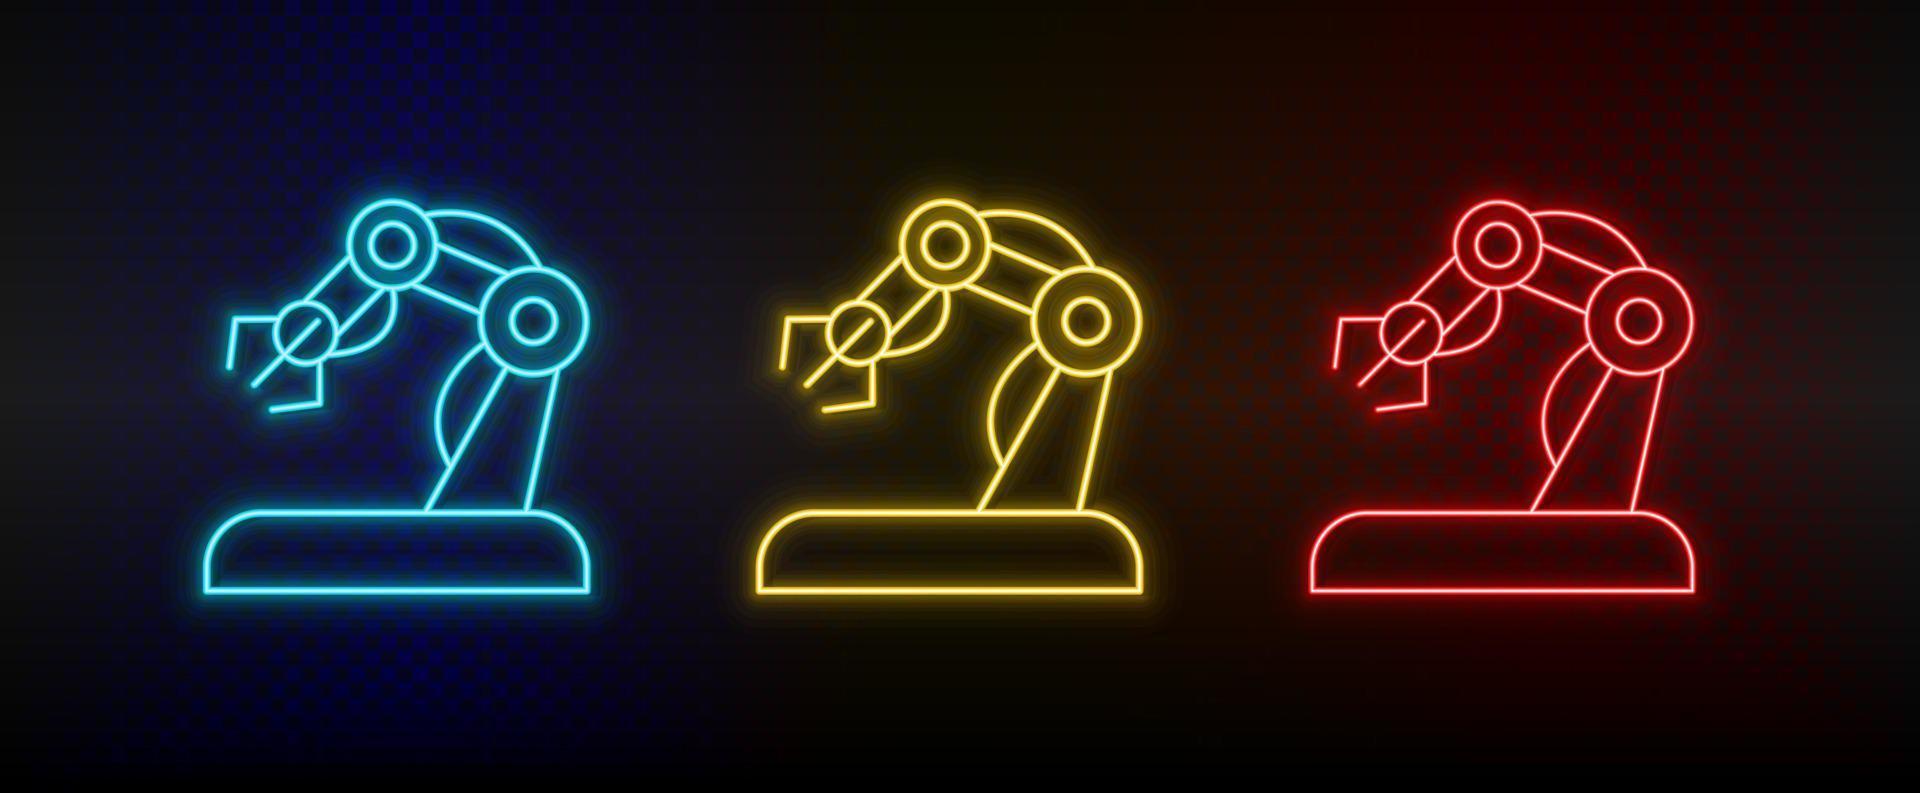 Neon-Symbole. Hand Roboterarm. Satz von roten, blauen, gelben Neonvektorsymbolen auf dunklem Hintergrund vektor